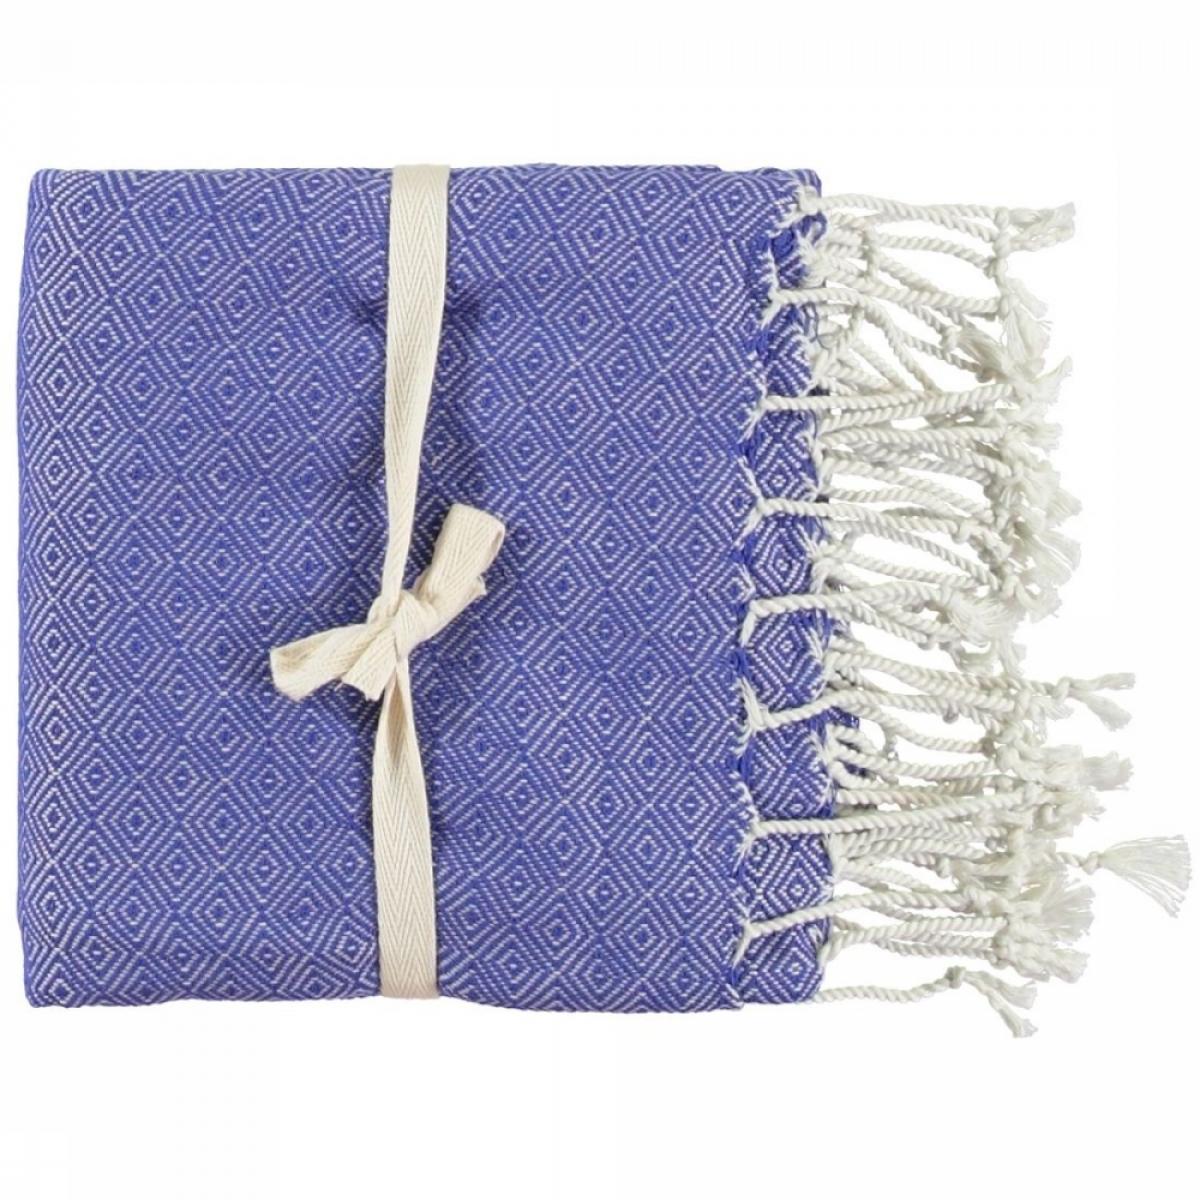 Nikiboko handdoek met blauwe print